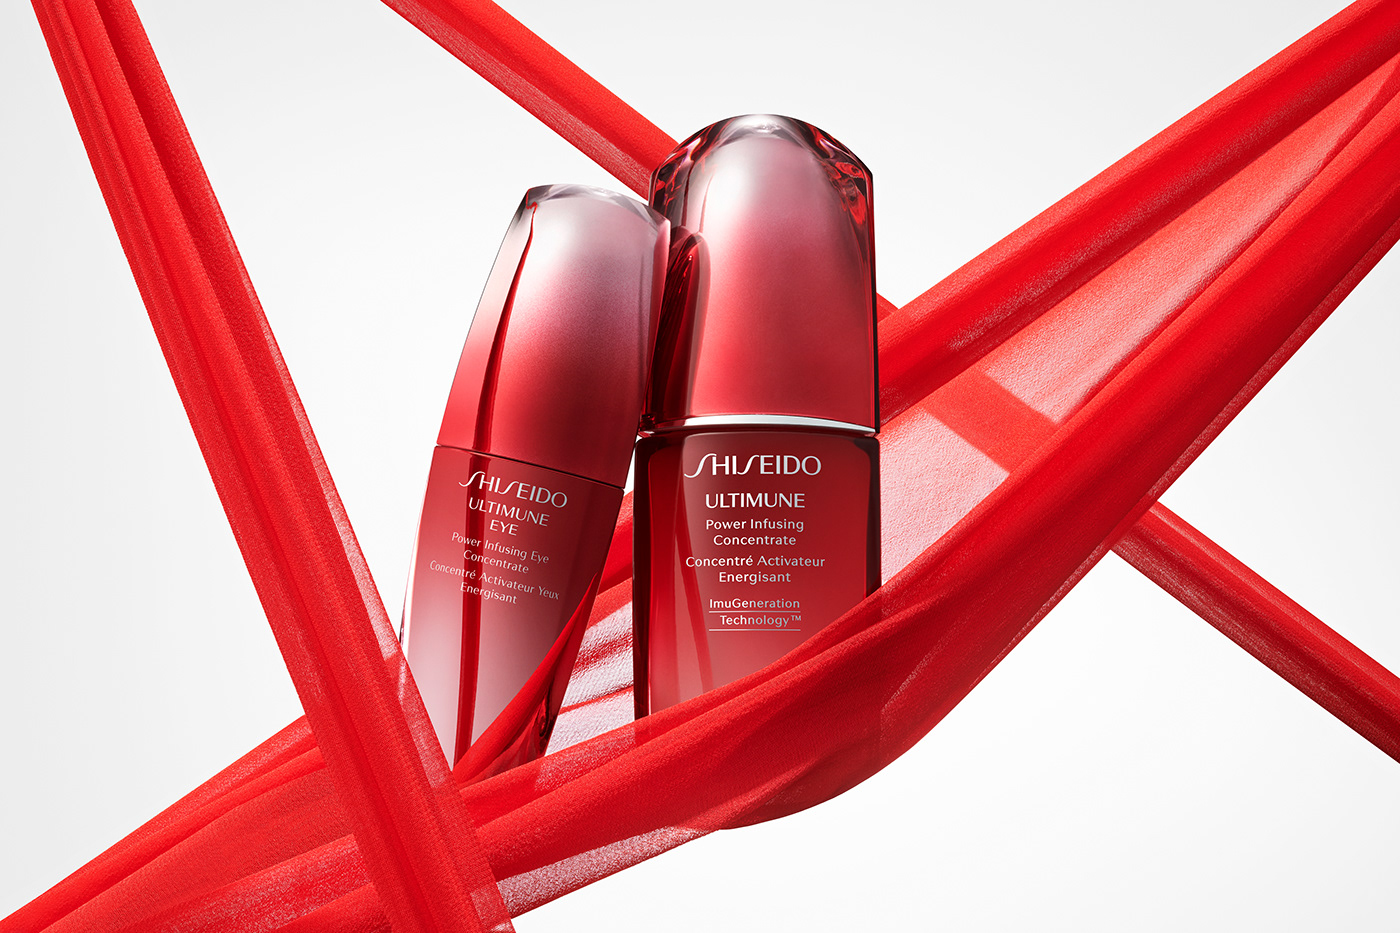 Shiseido de. Shiseido логотип. Шисейдо лимитированная коллекция. Шисейдо Usuzumi. Shiseido ad 2000.